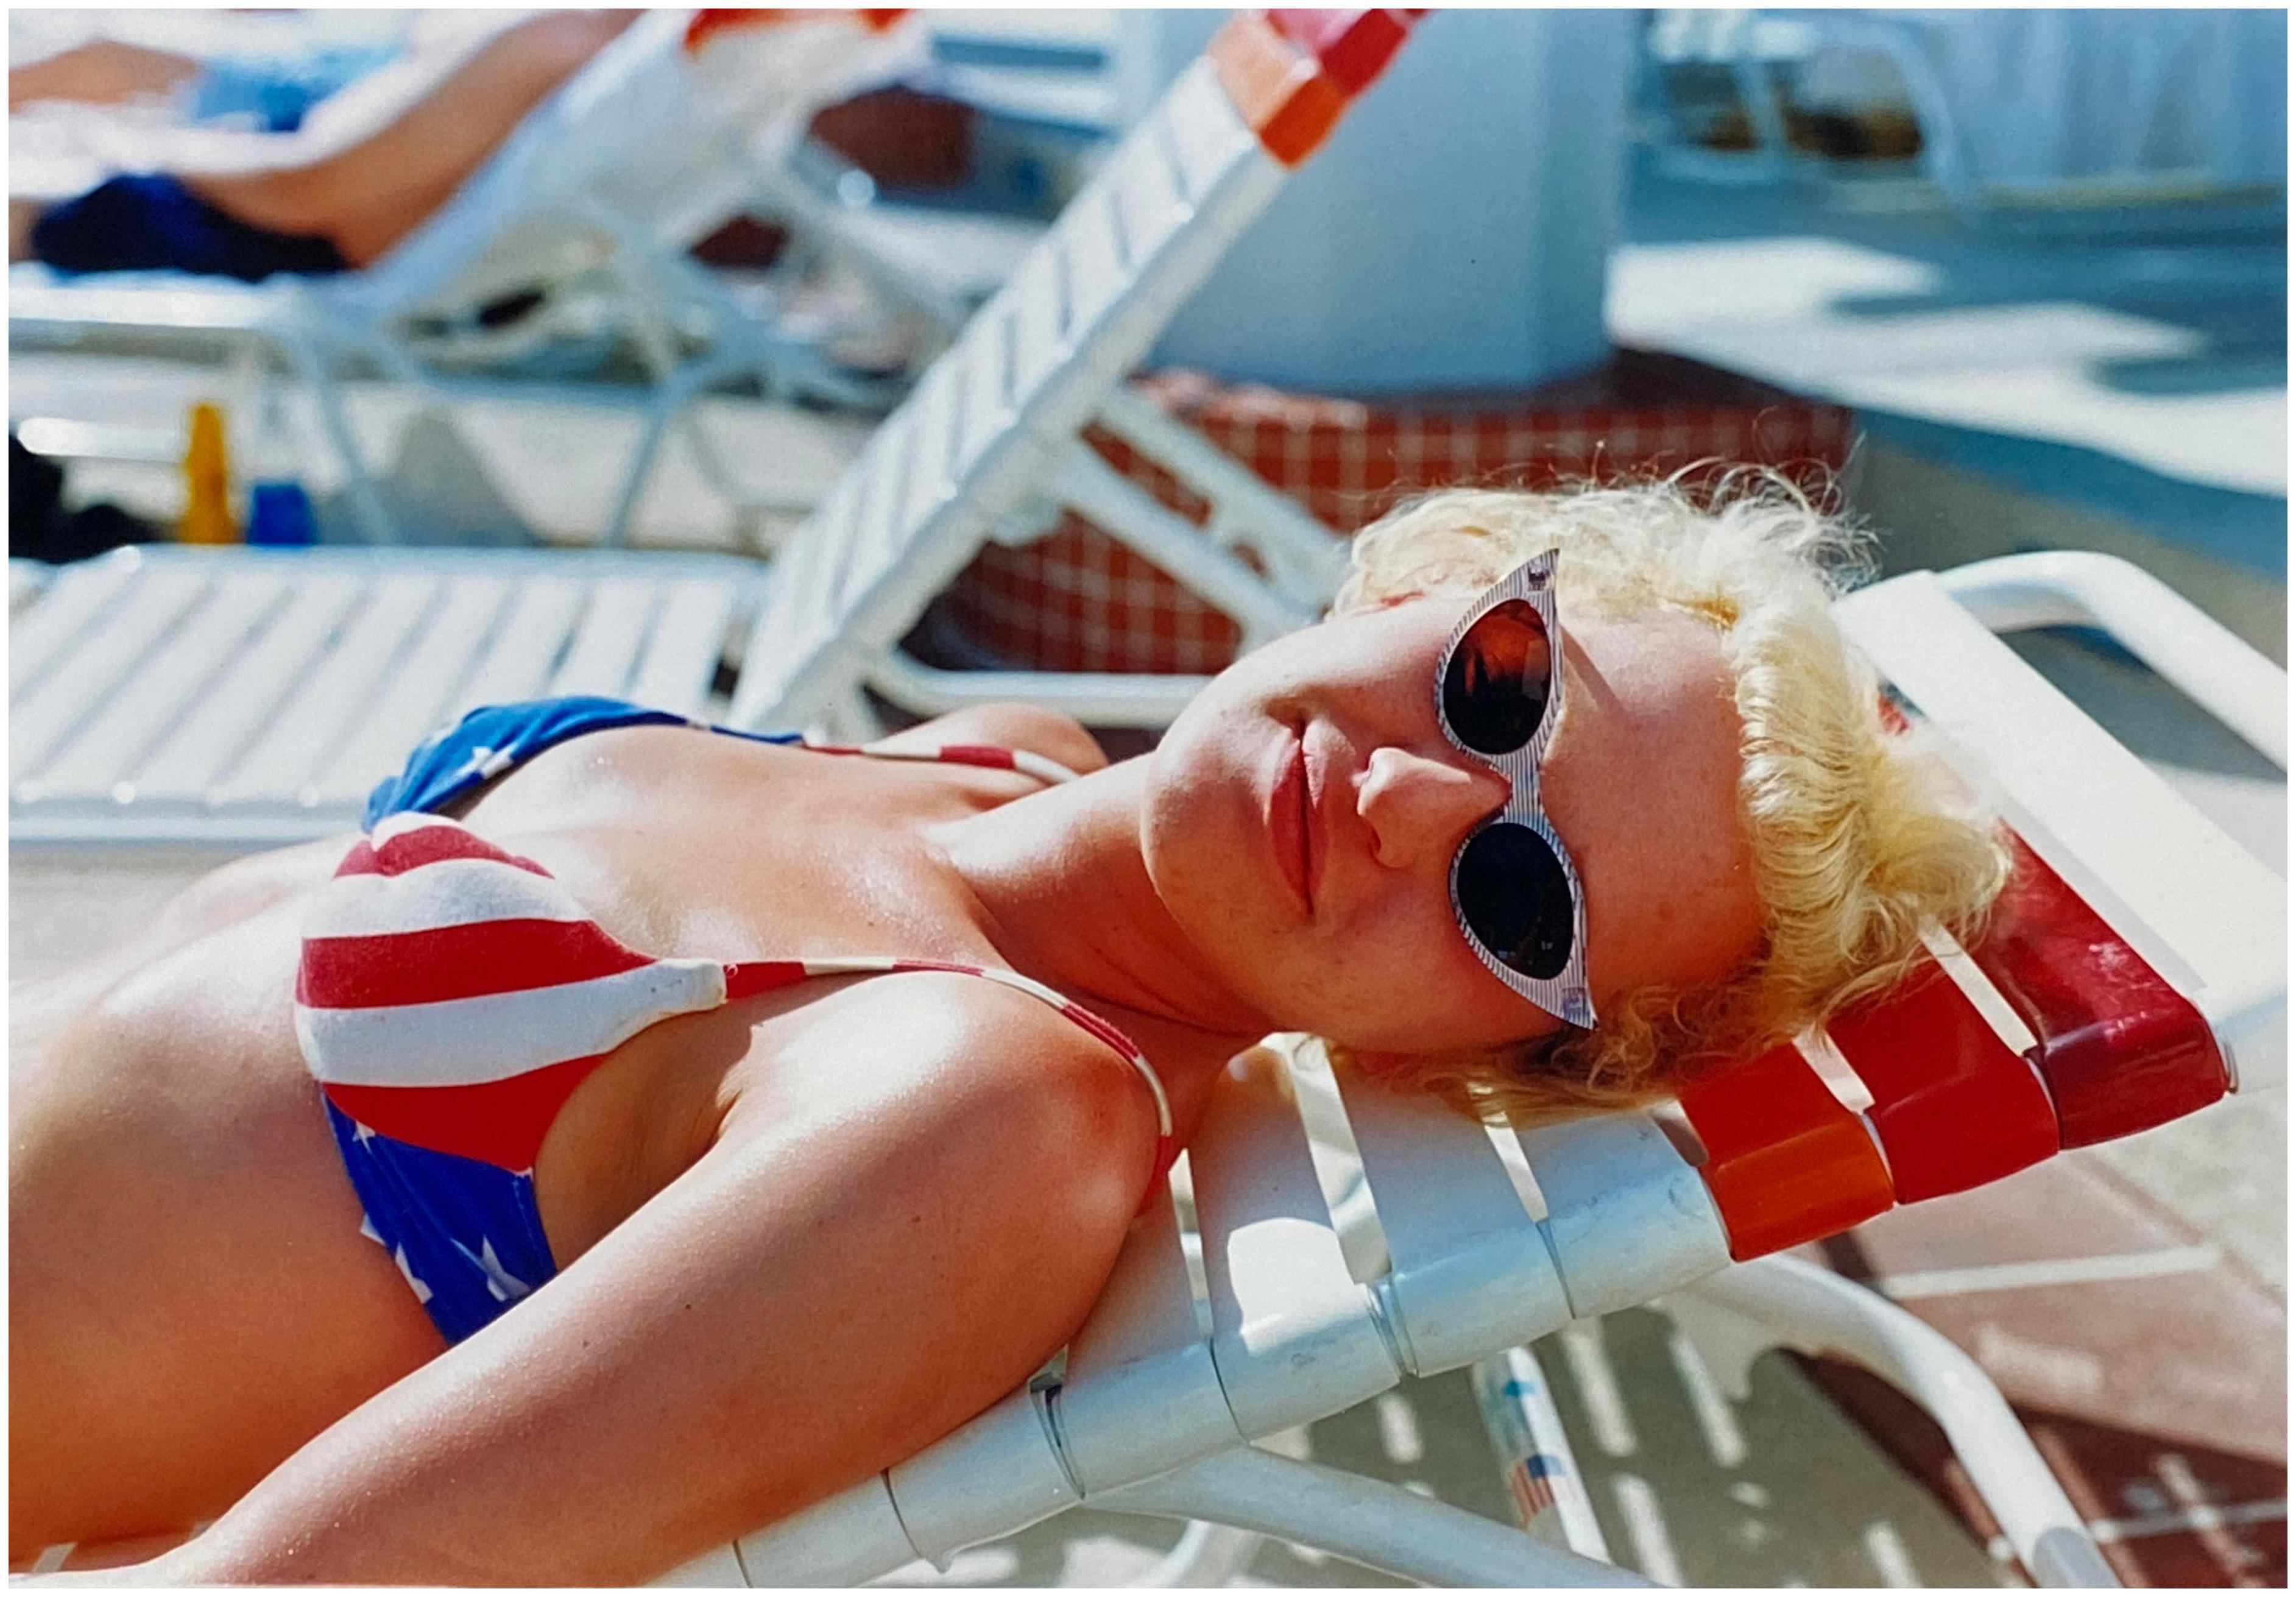 Richard Heeps Portrait Photograph - Stars and Stripes Bikini, Las Vegas - Contemporary Portrait Color Photography